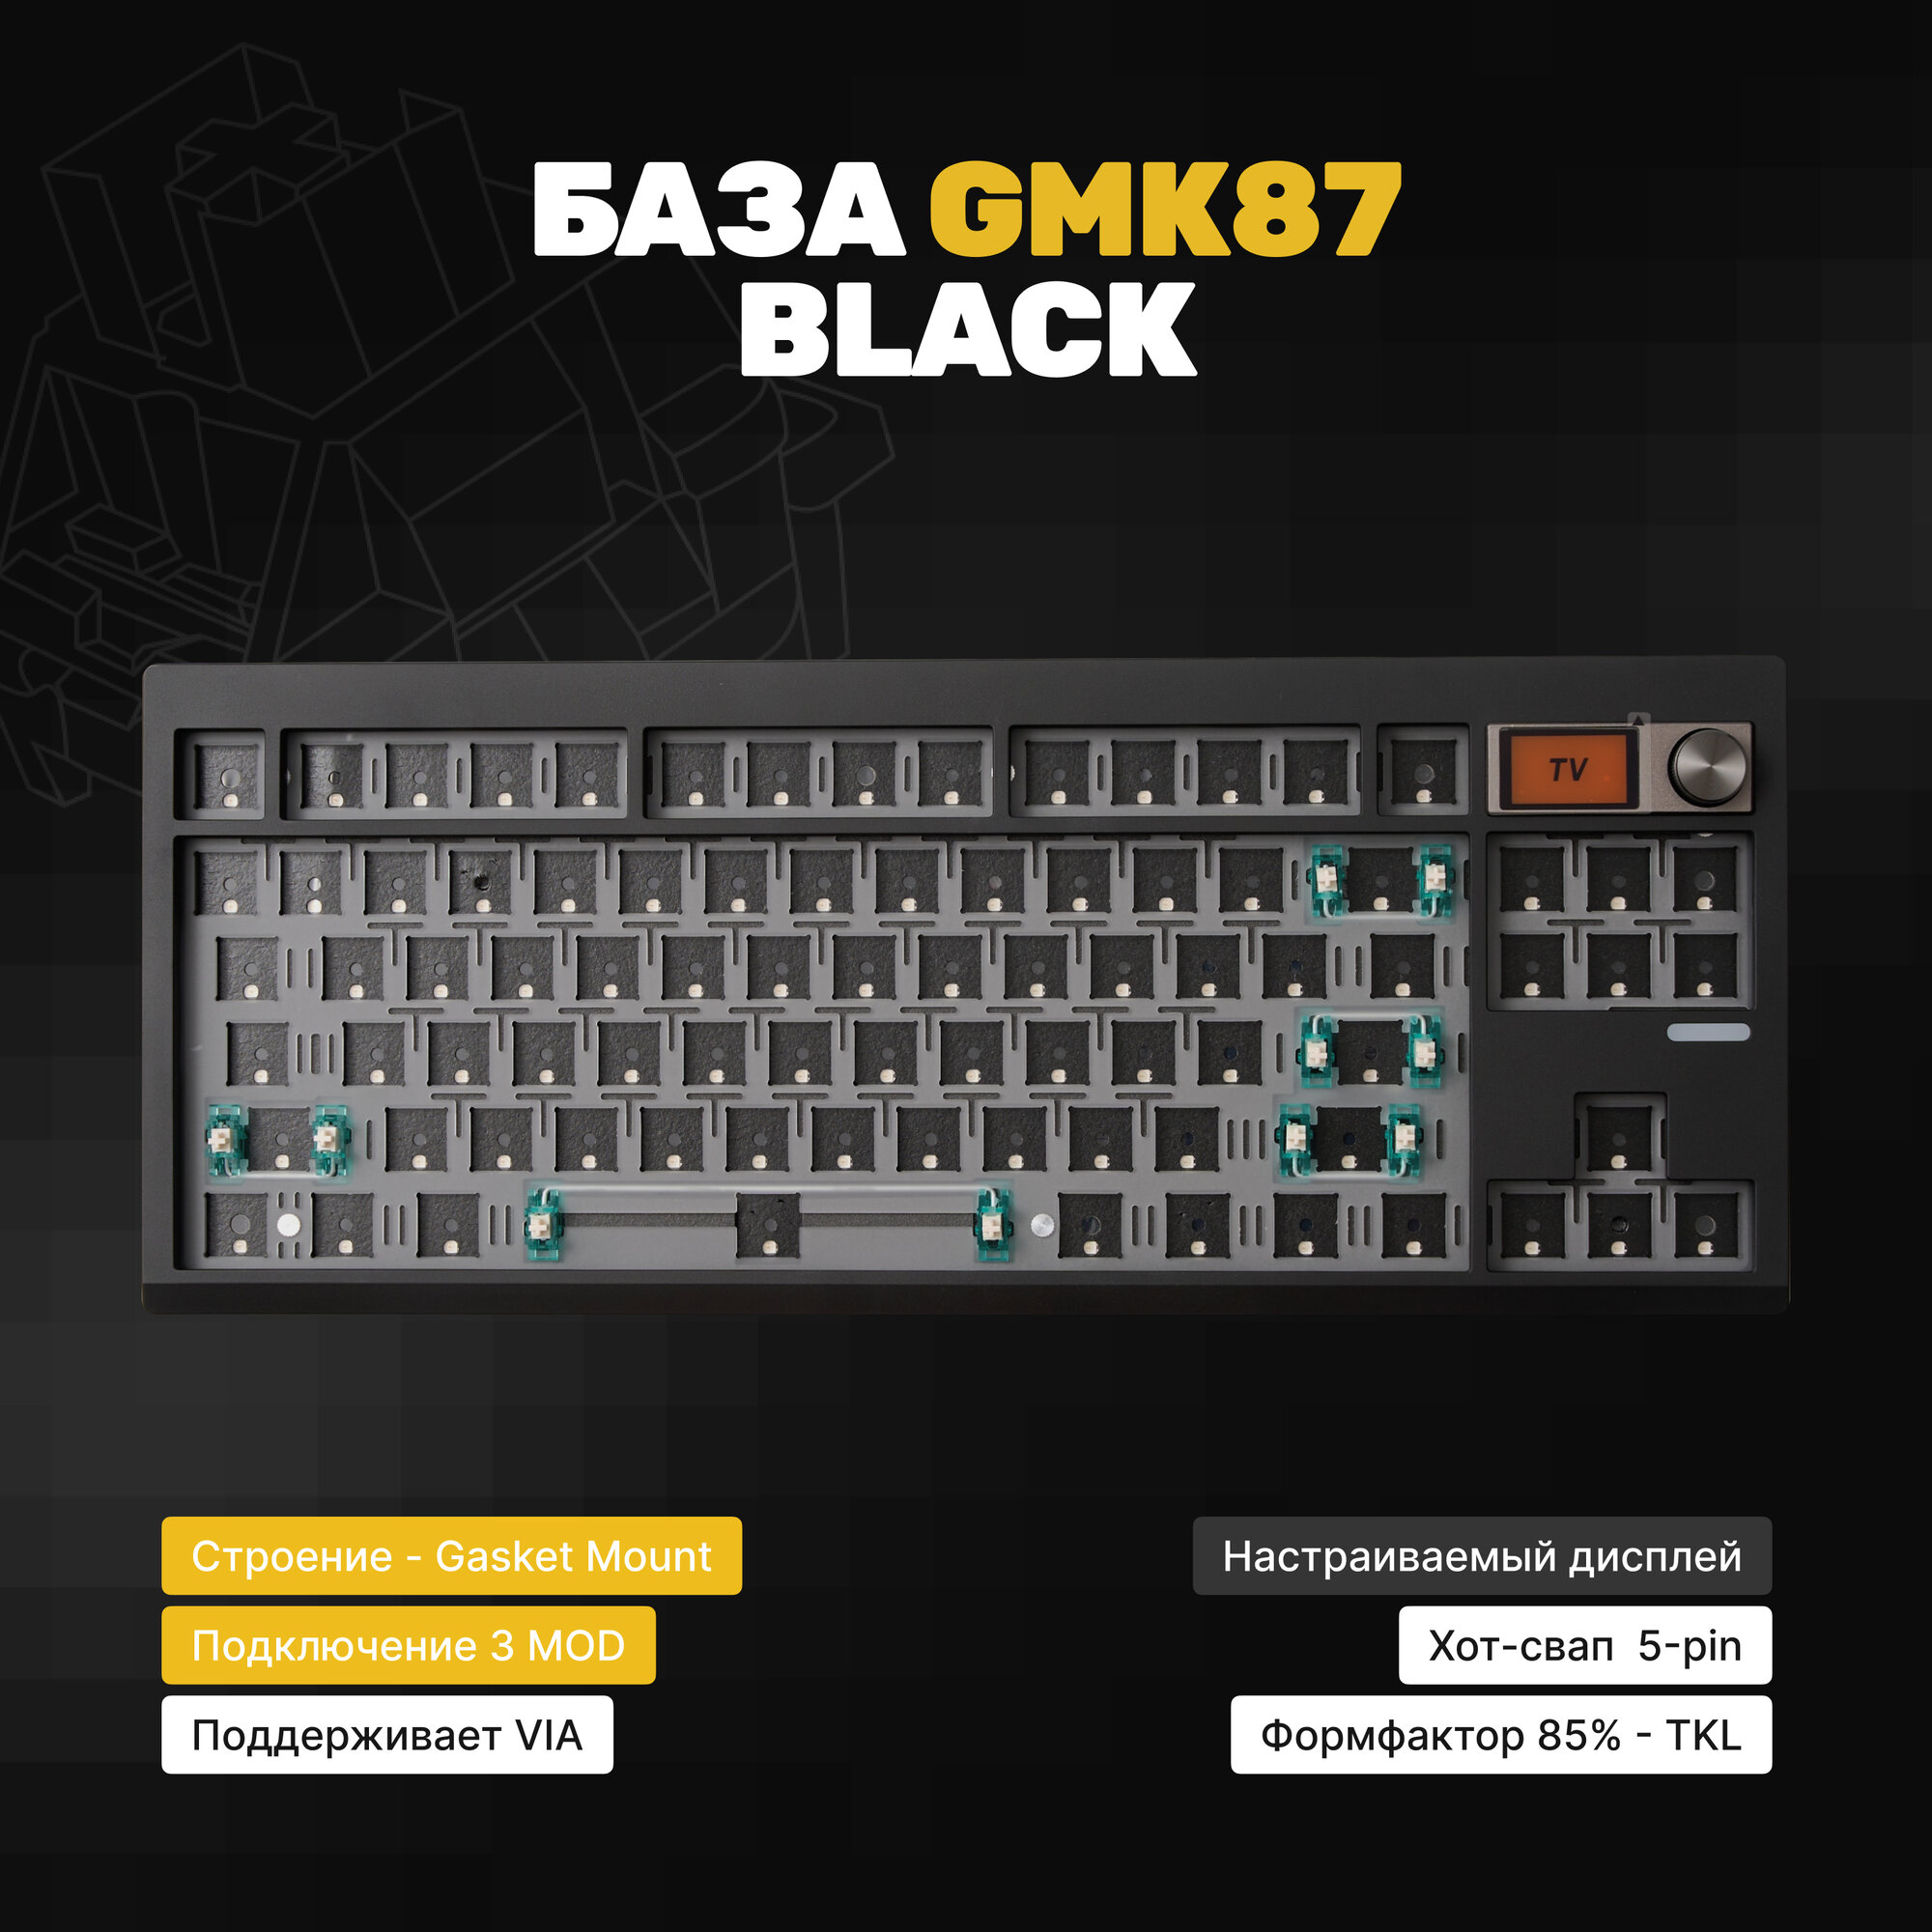 База для сборки механической клавиатура Zuoya GMK87 (Black) Gasket-mount черная VIA крутилка экран Hotswap 3MOD